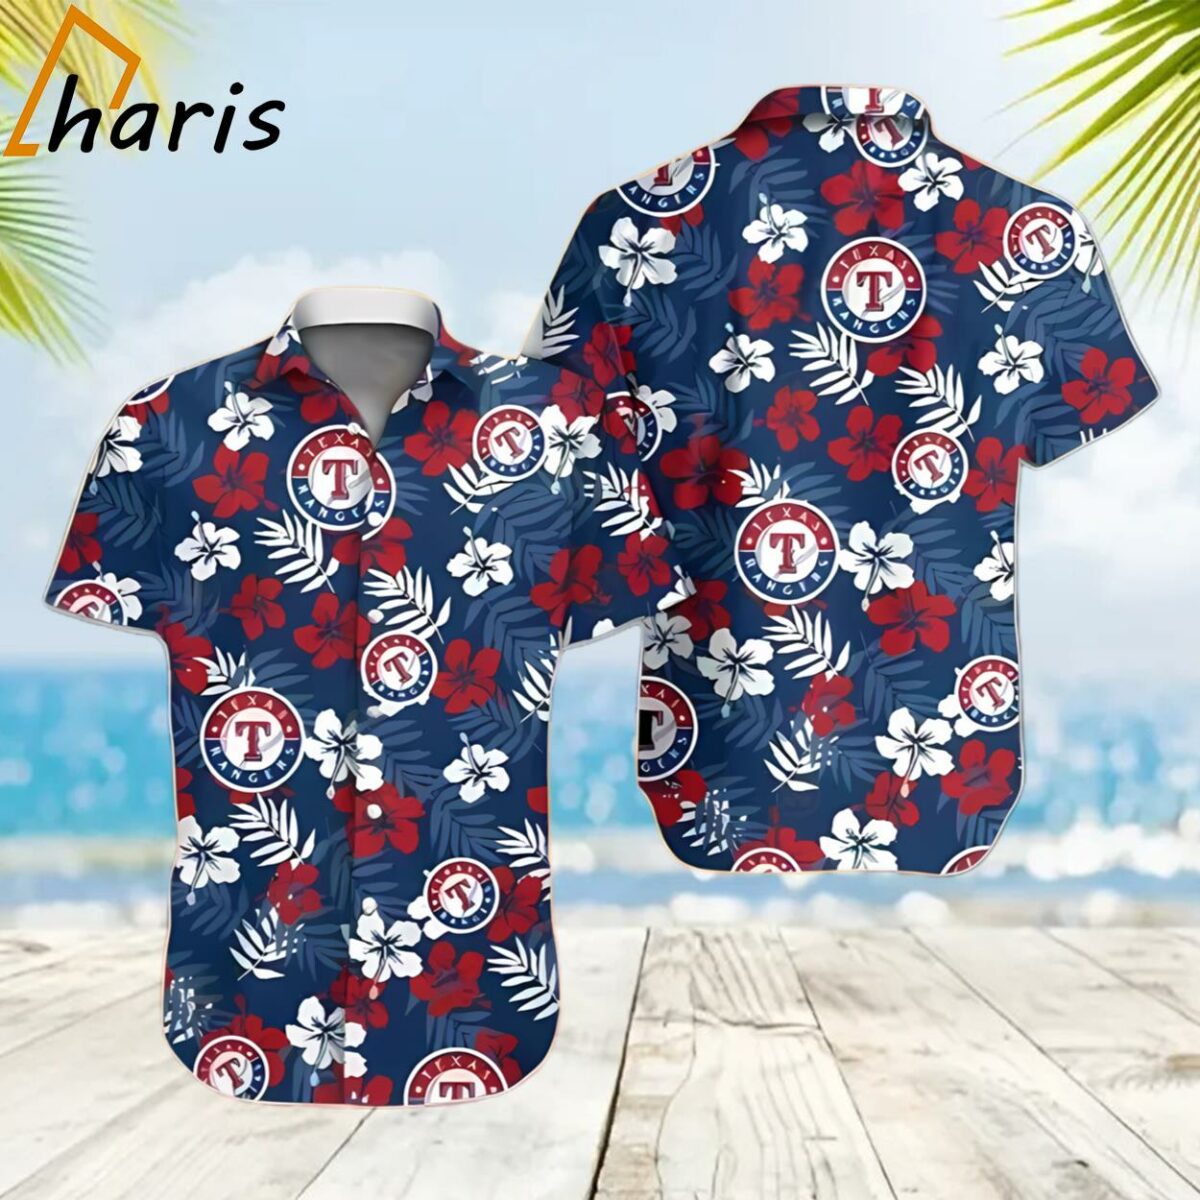 Tropical Texas Rangers Hawaiian Shirt 2 2